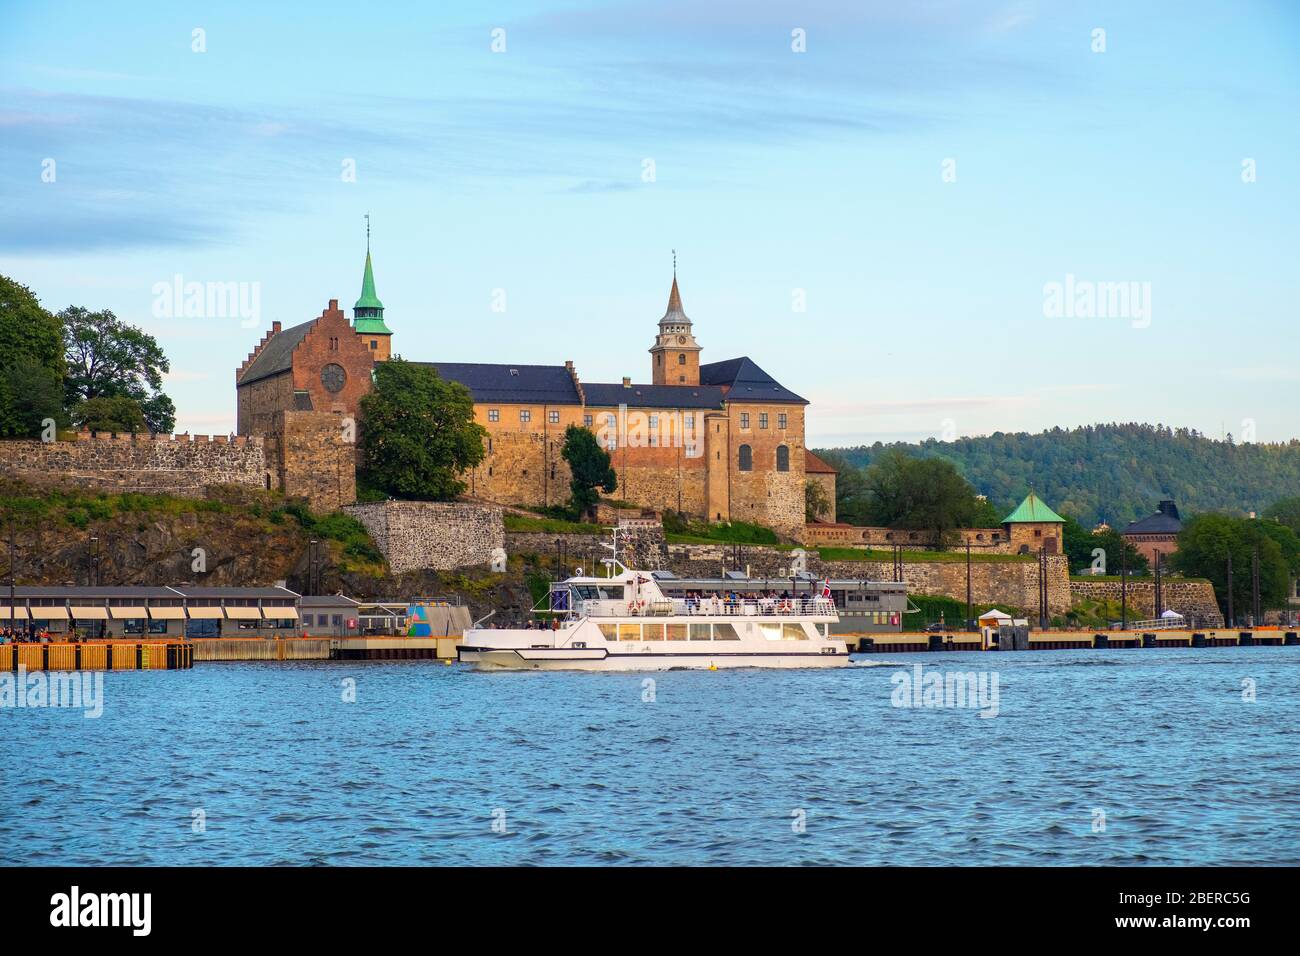 Oslo, Ostlandet / Norwegen - 2019/08/31: Panoramablick auf die mittelalterliche Akershus Festung - Akershus Festning - historische königliche Residenz am Oslofjorden Meer Stockfoto